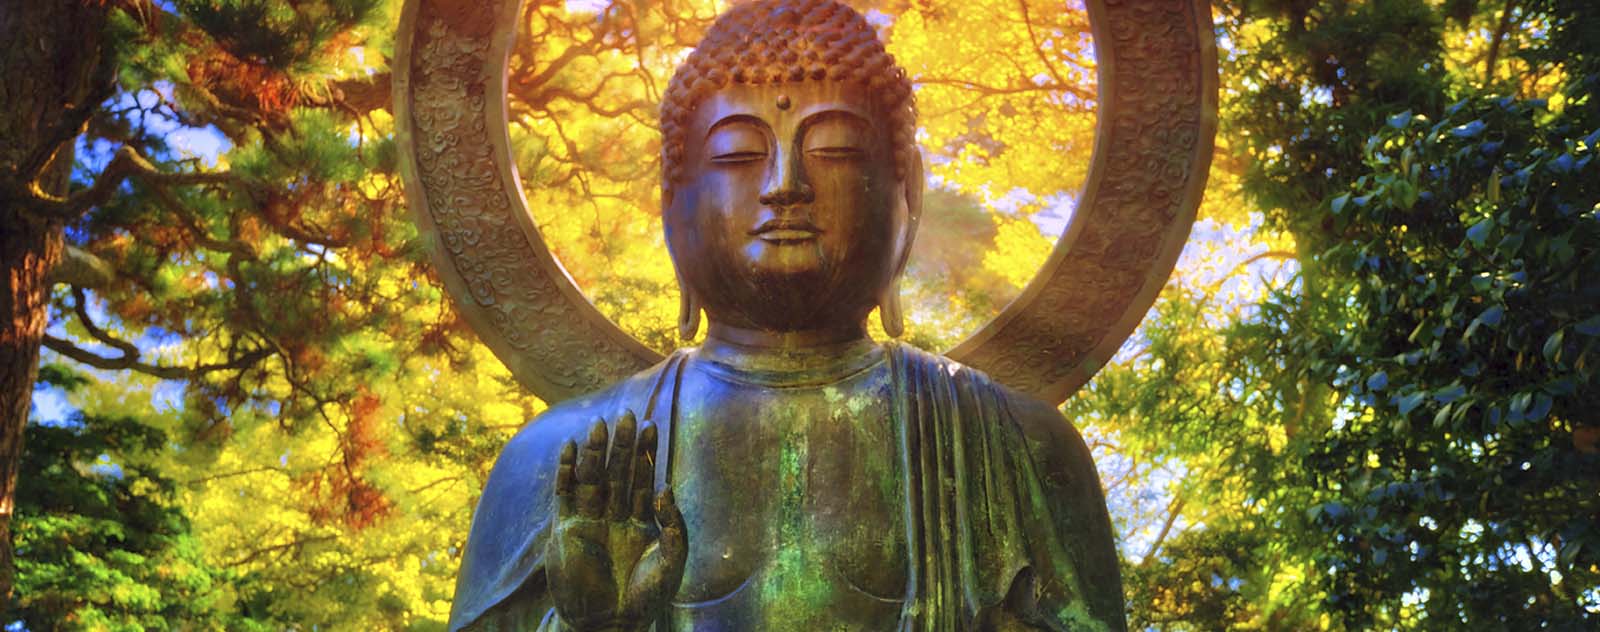 Positions et postures du Bouddha : Signification